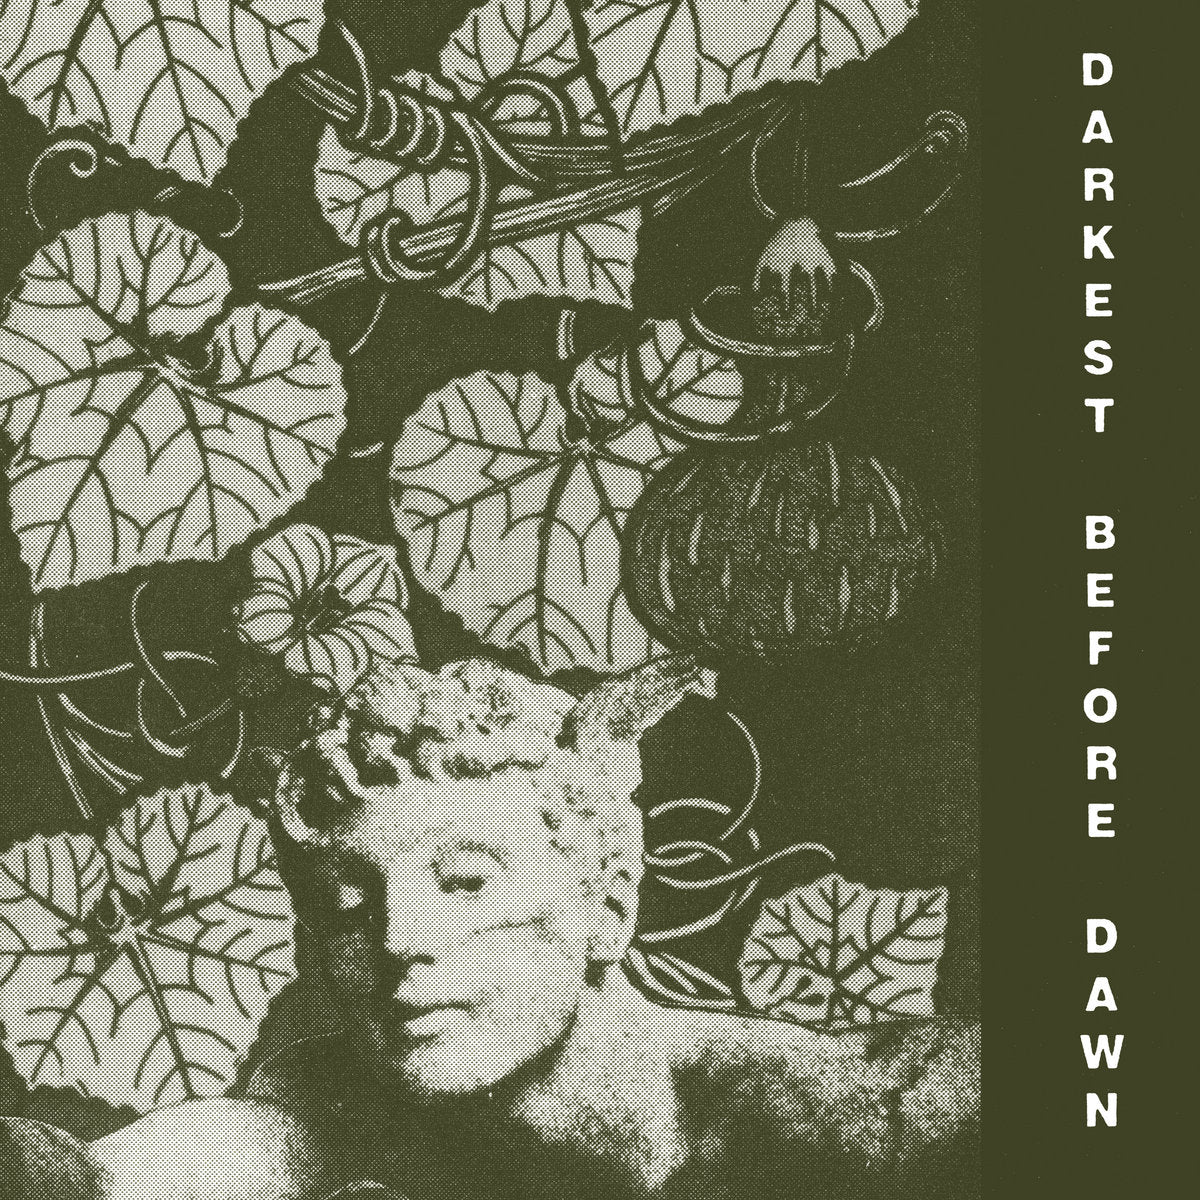 DARK DAY - "DARKEST BEFORE DAWN" LP